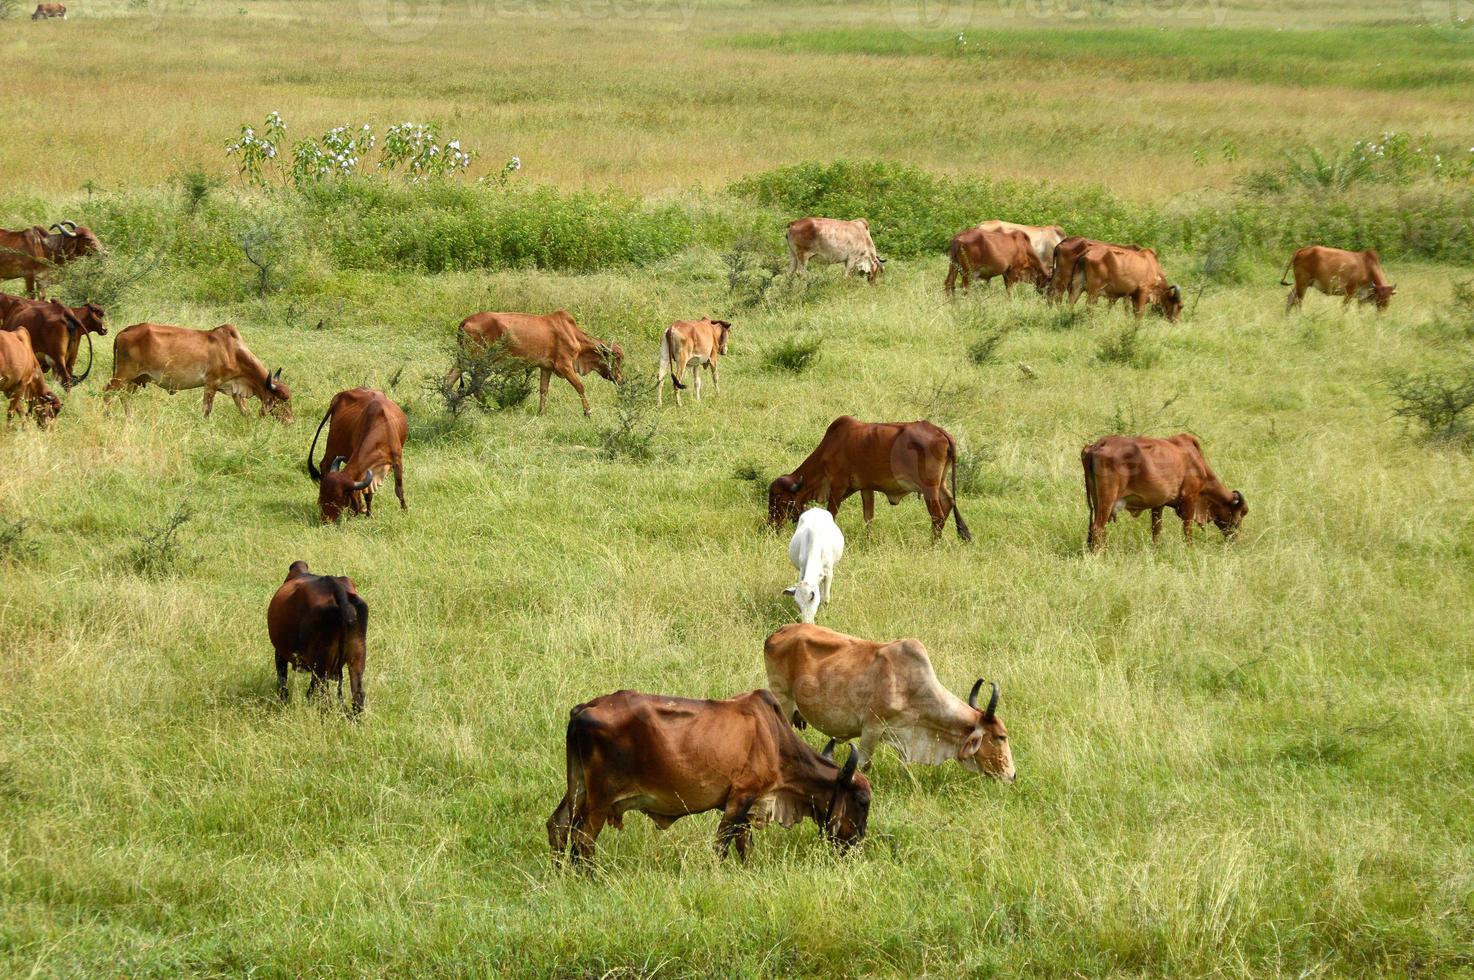 kor och tjurar betar på ett grönskande fält foto